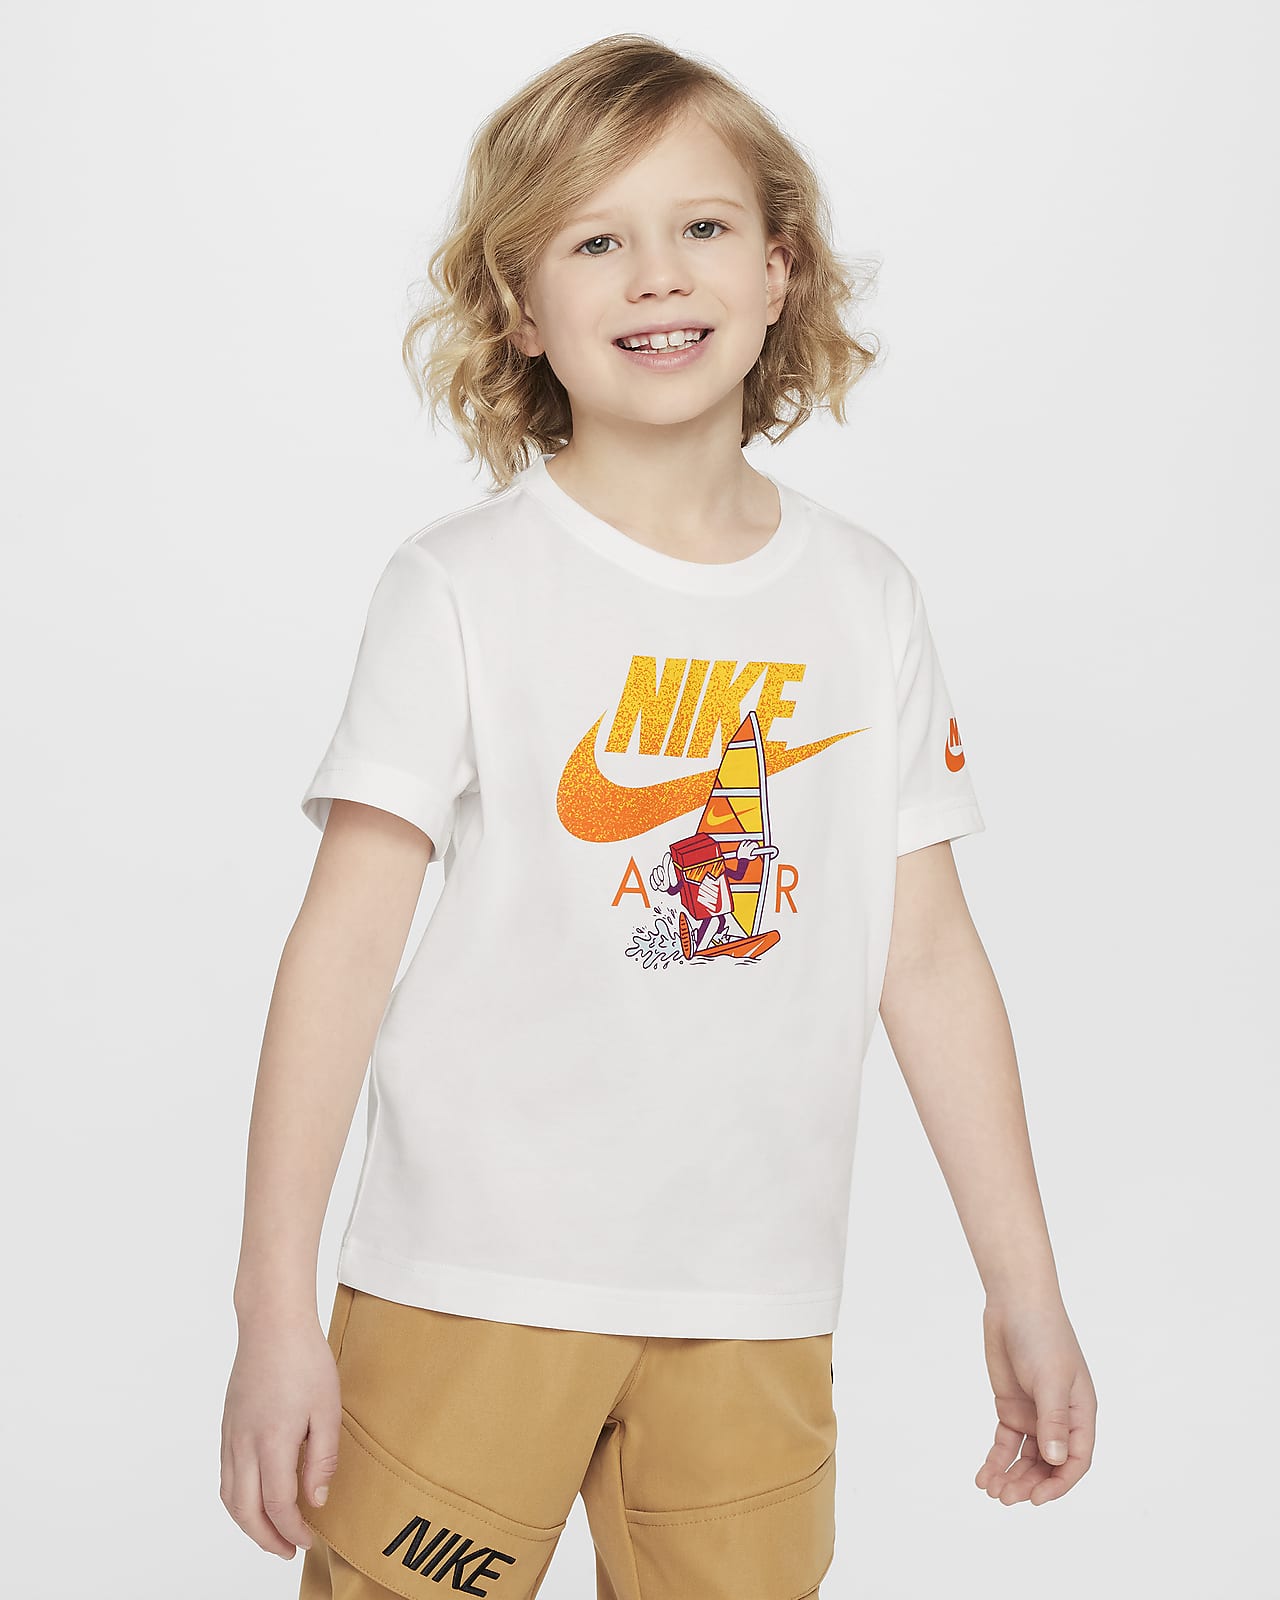 Volné windsurfingové tričko Nike Air pro malé děti